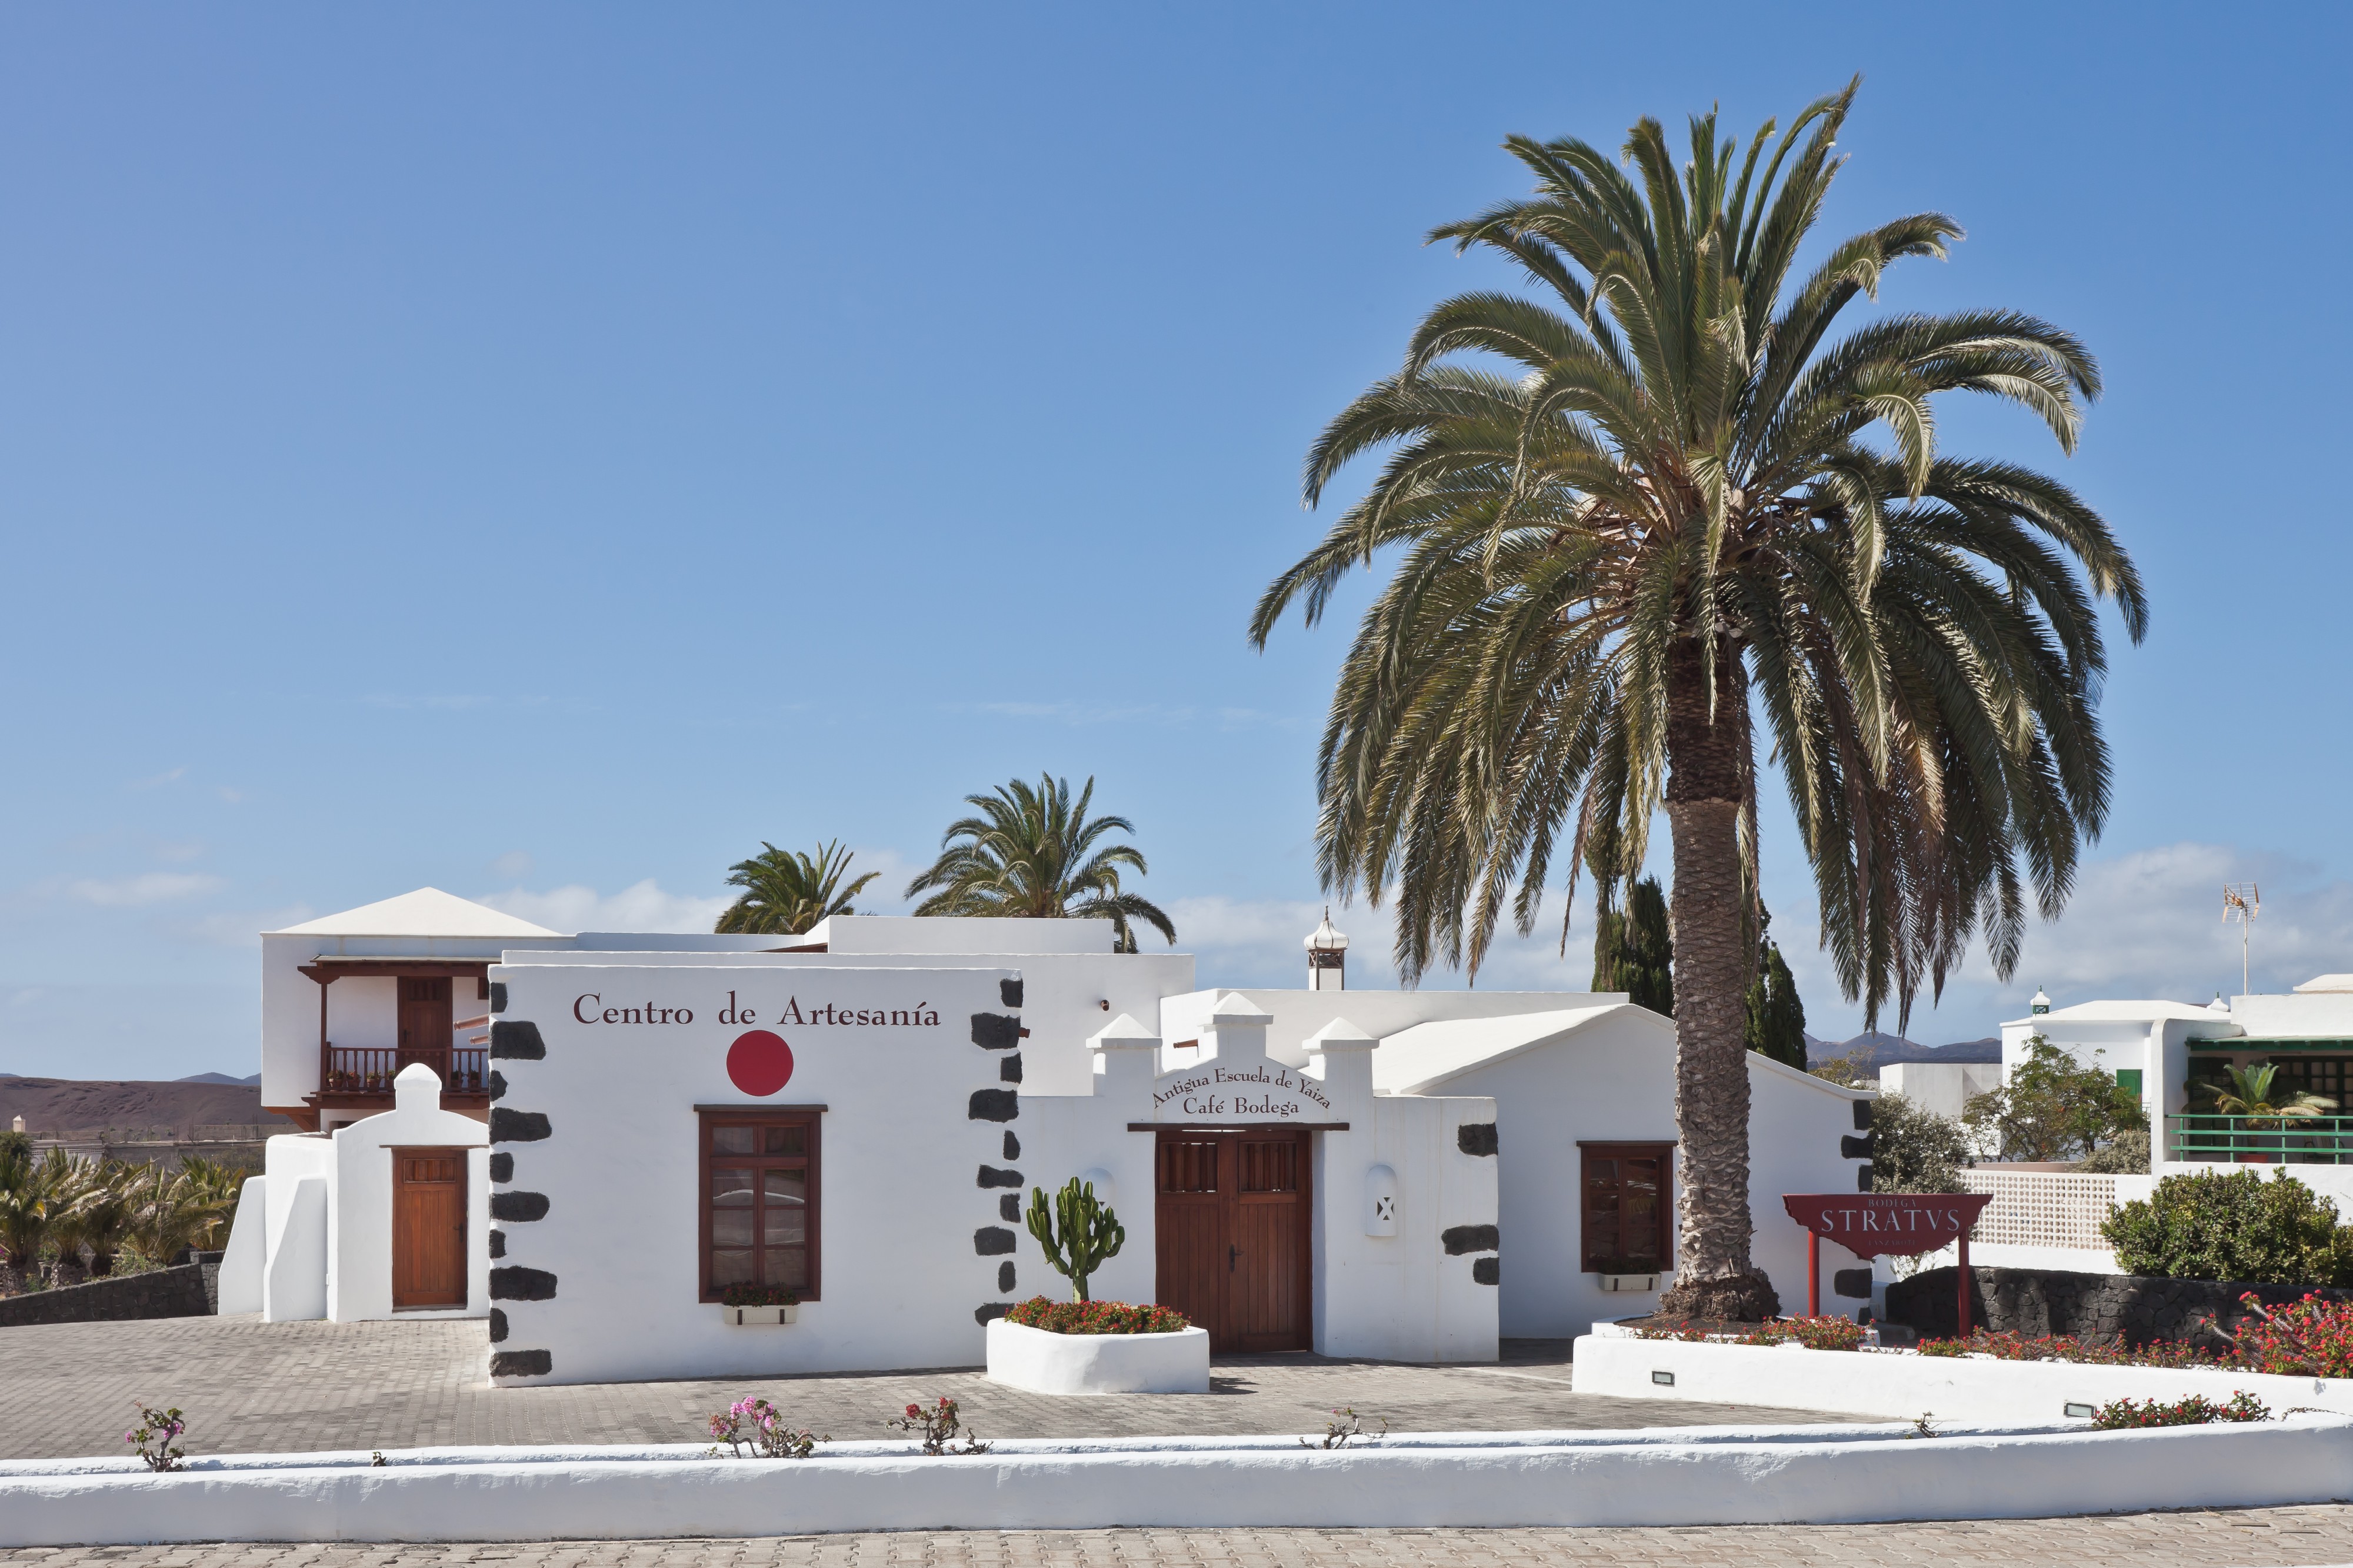 Town of Yaiza - Lanzarote - Spain. Y35